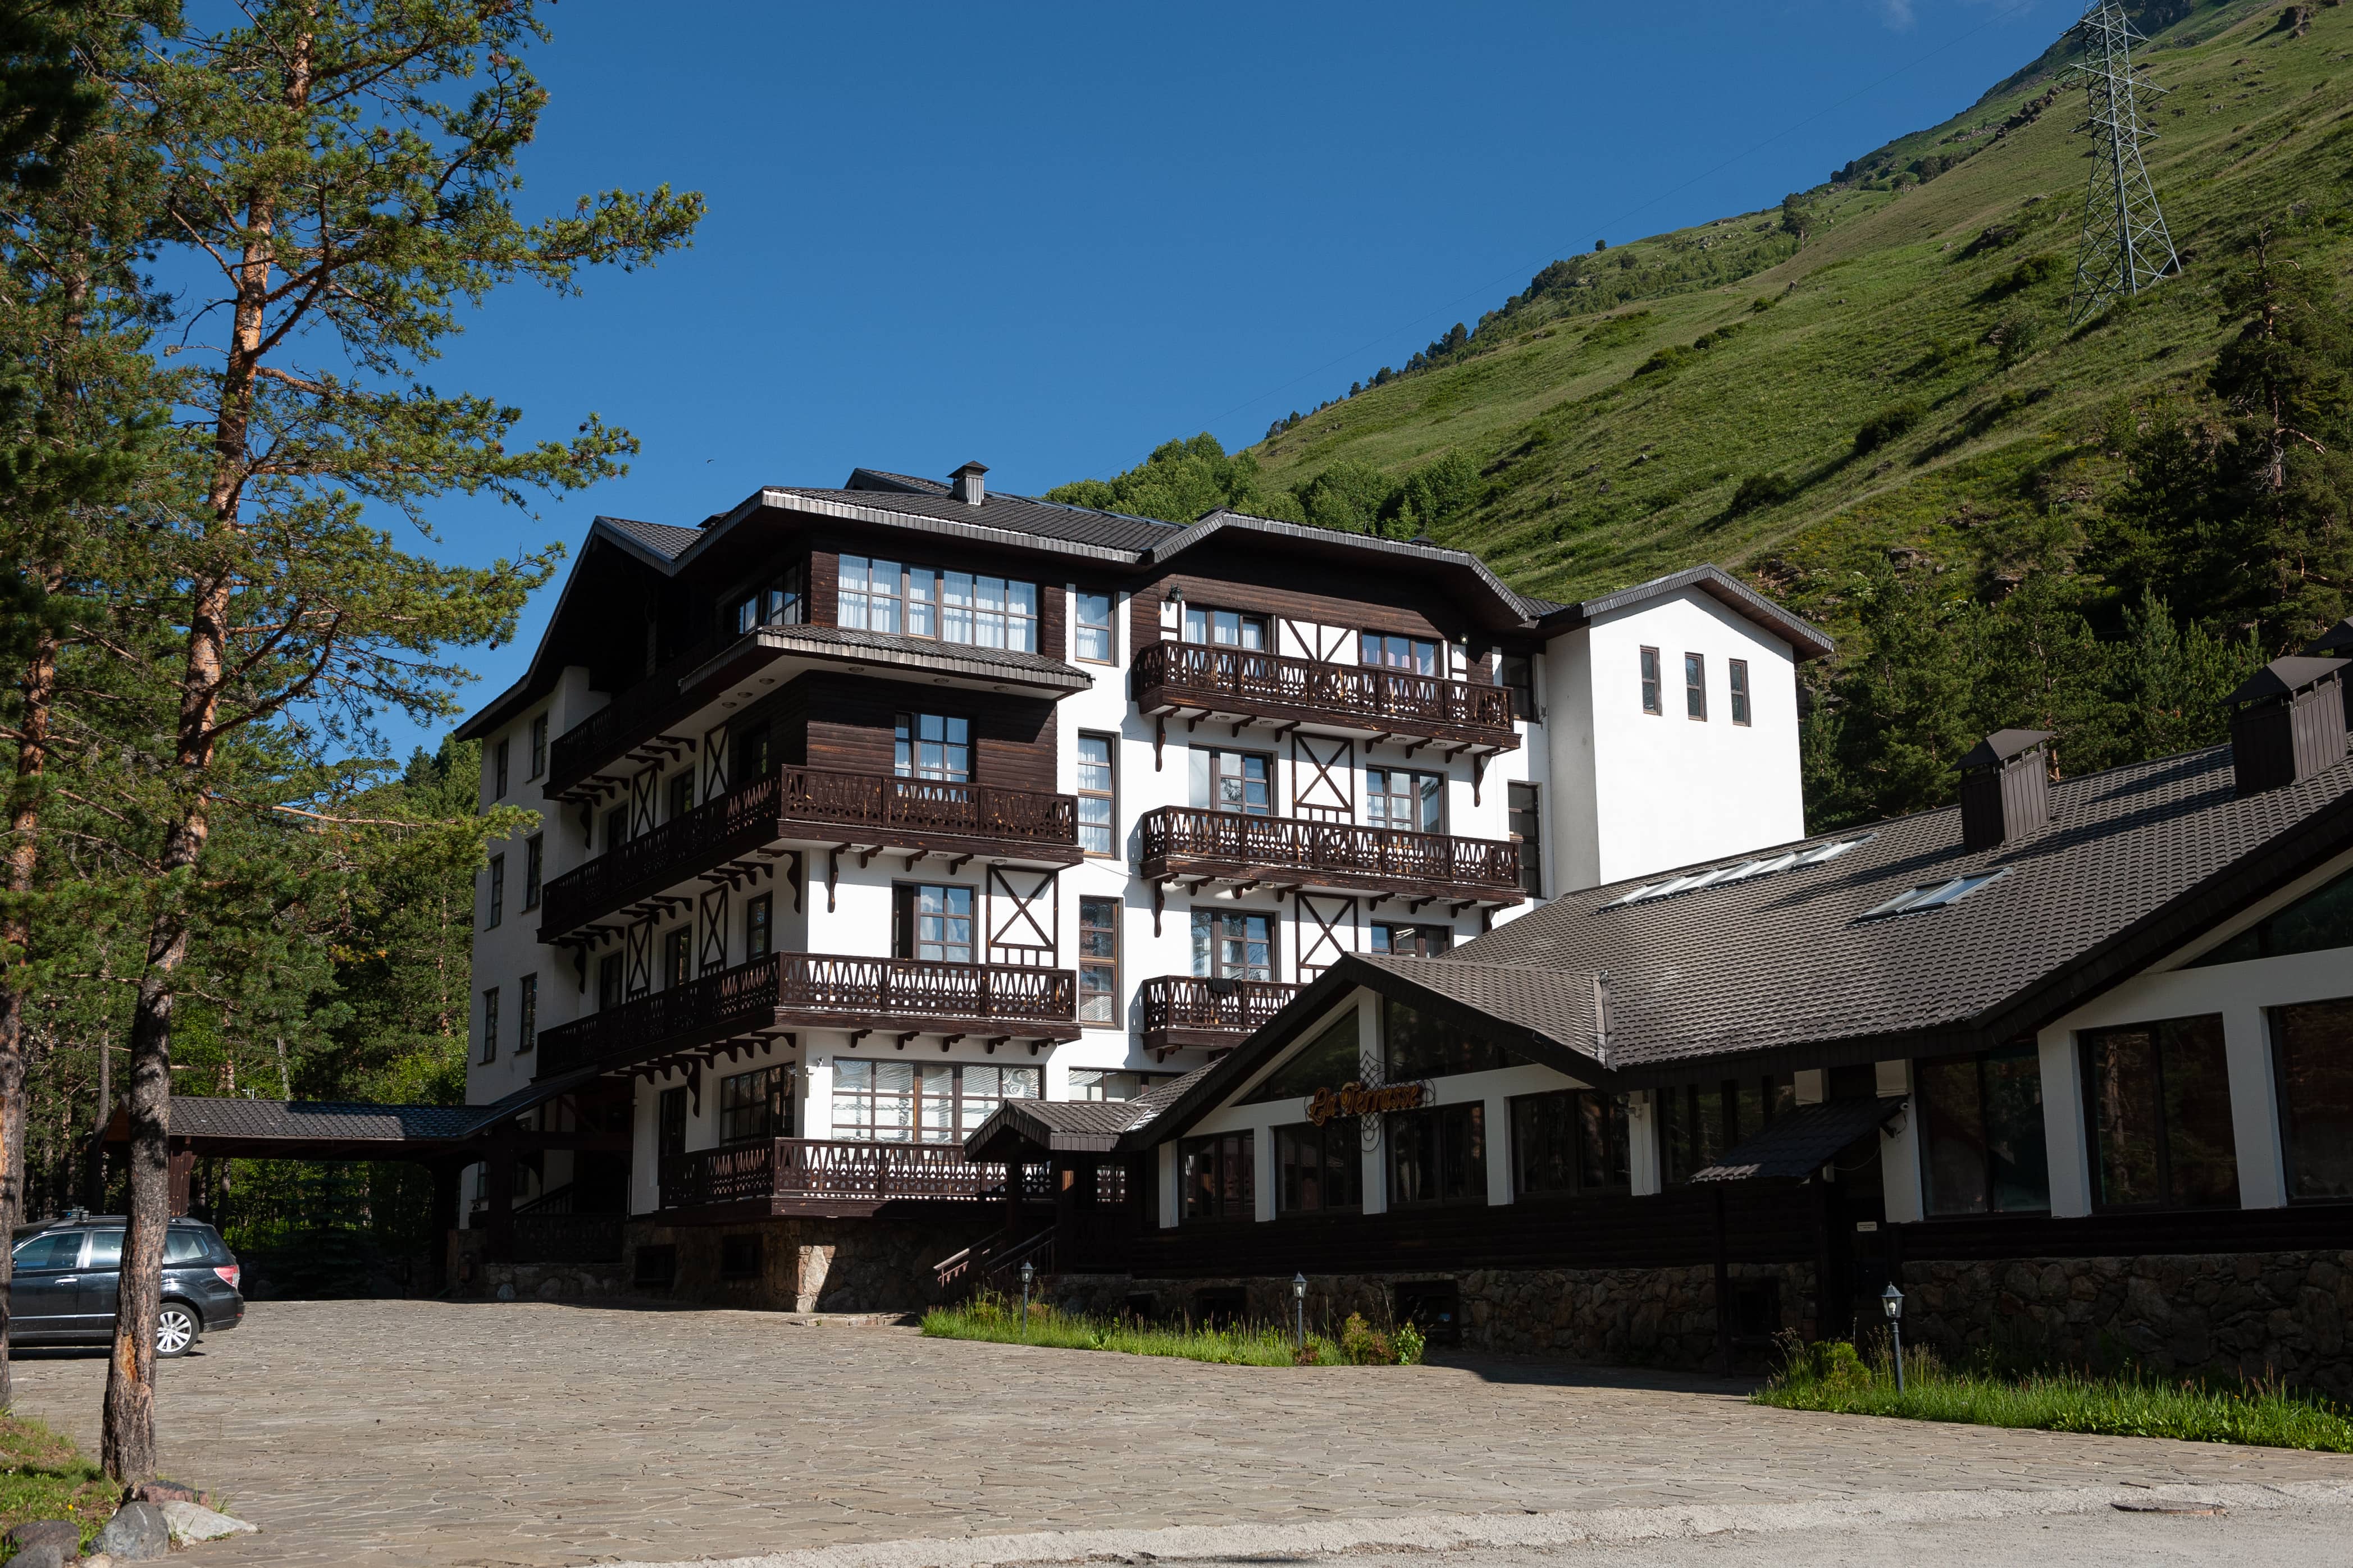 Красивая альпийская архитектура, сразу за отелем - высокий горный склон.